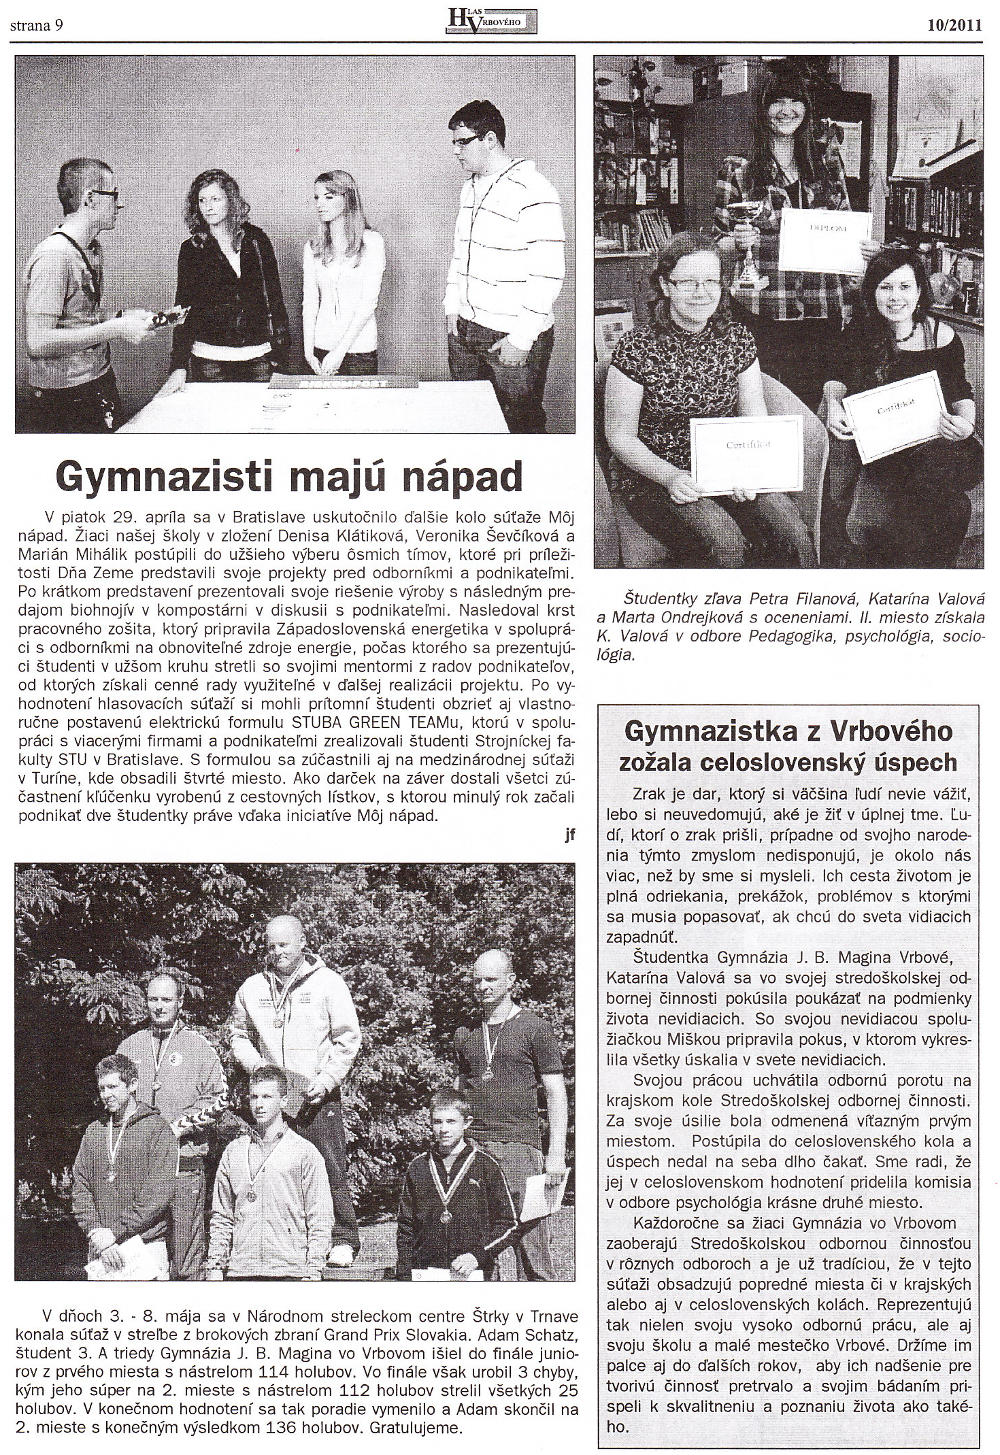 Hlas Vrbového 10/2011, strana 9